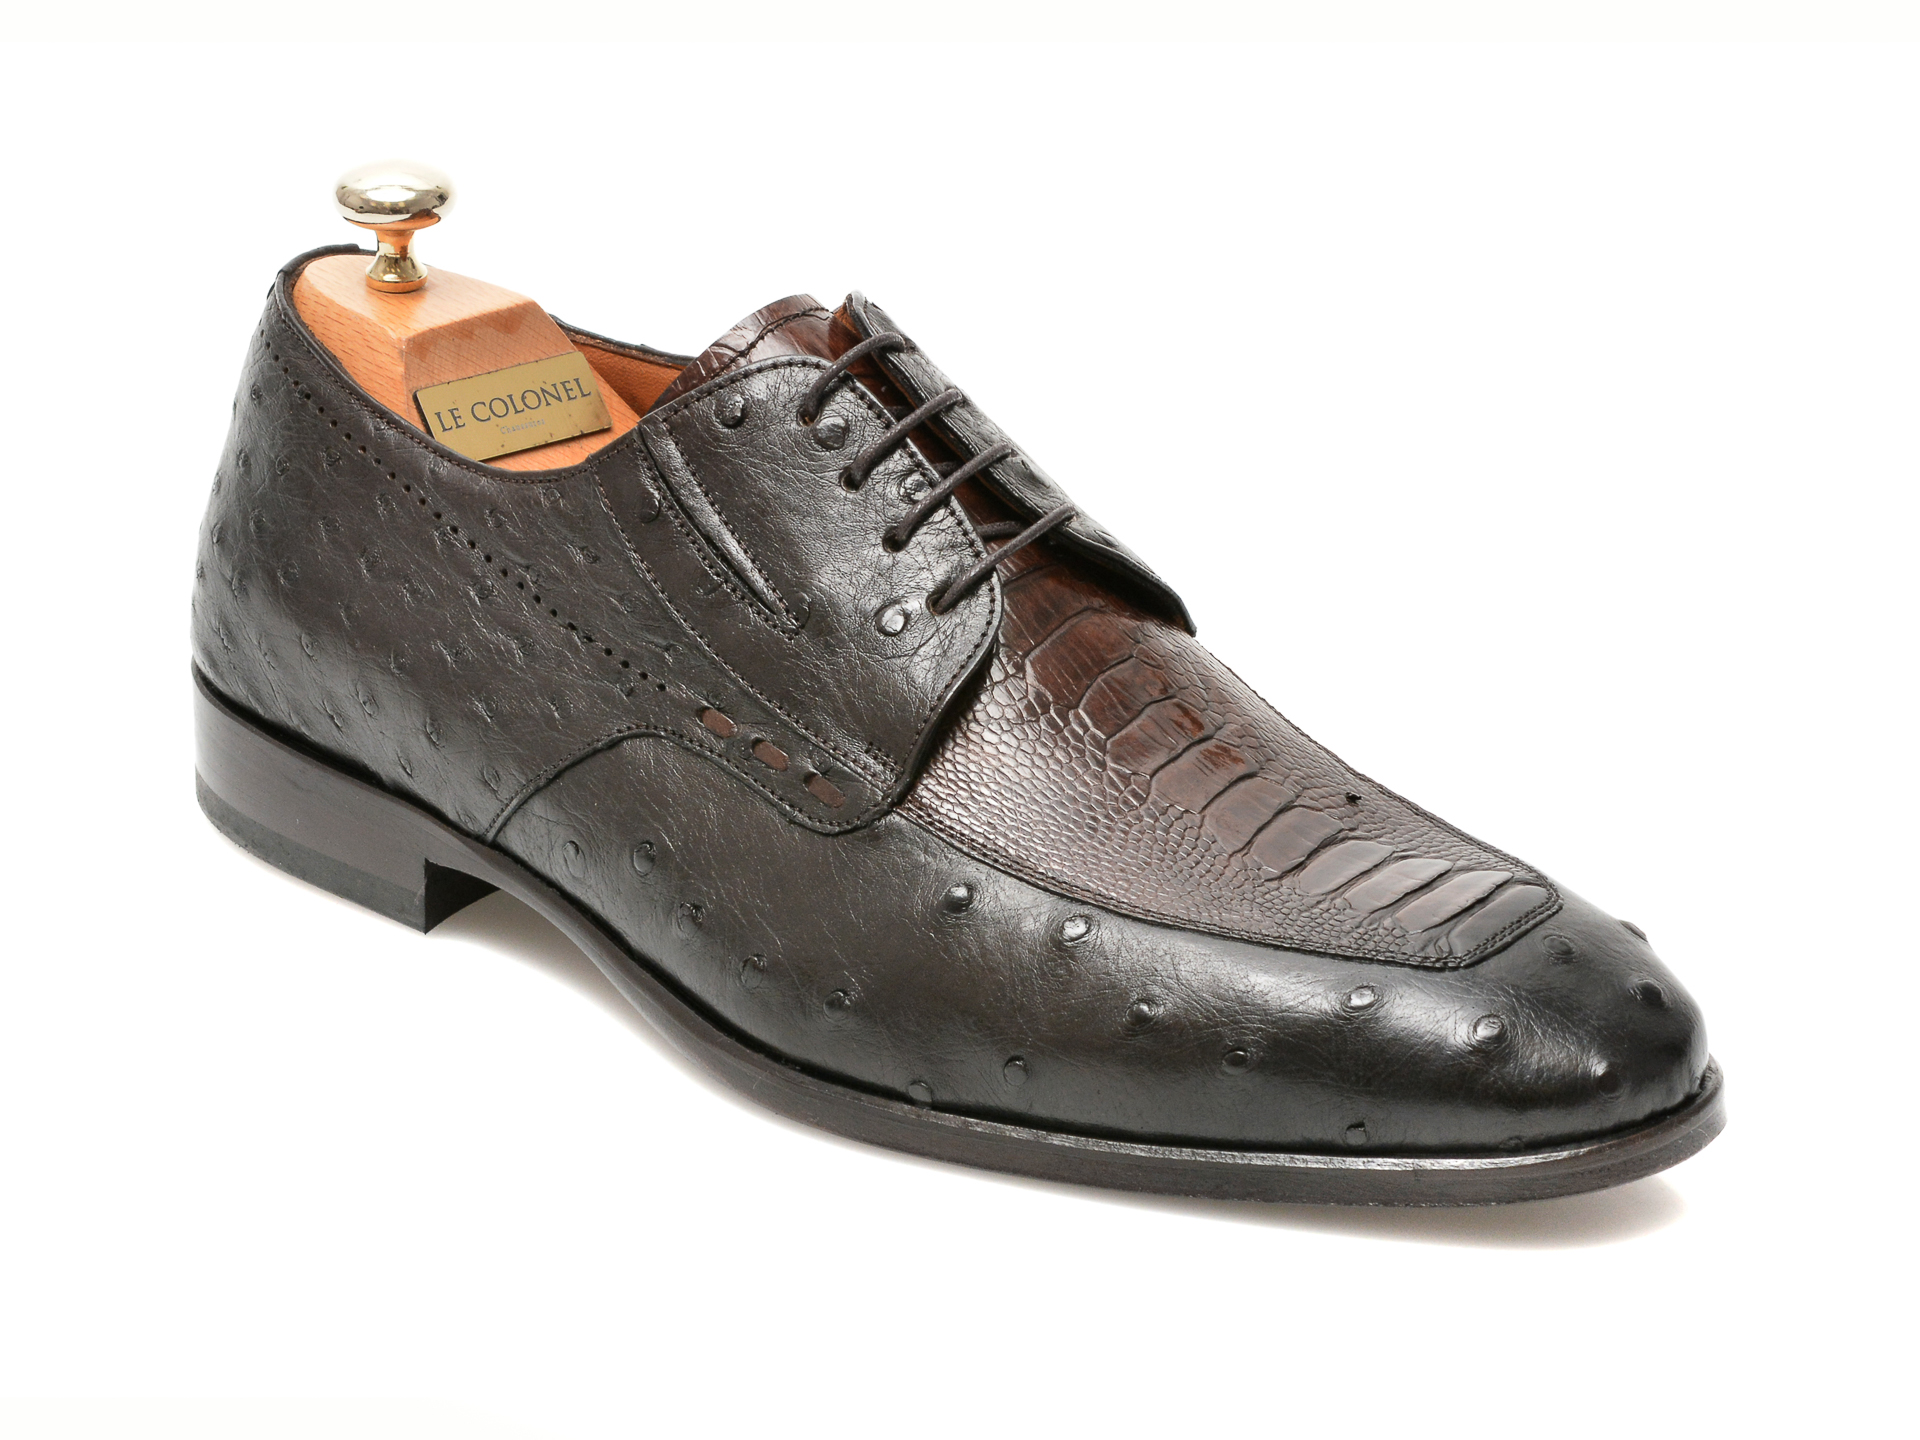 Pantofi LE COLONEL maro, 48701, din piele naturala Le Colonel